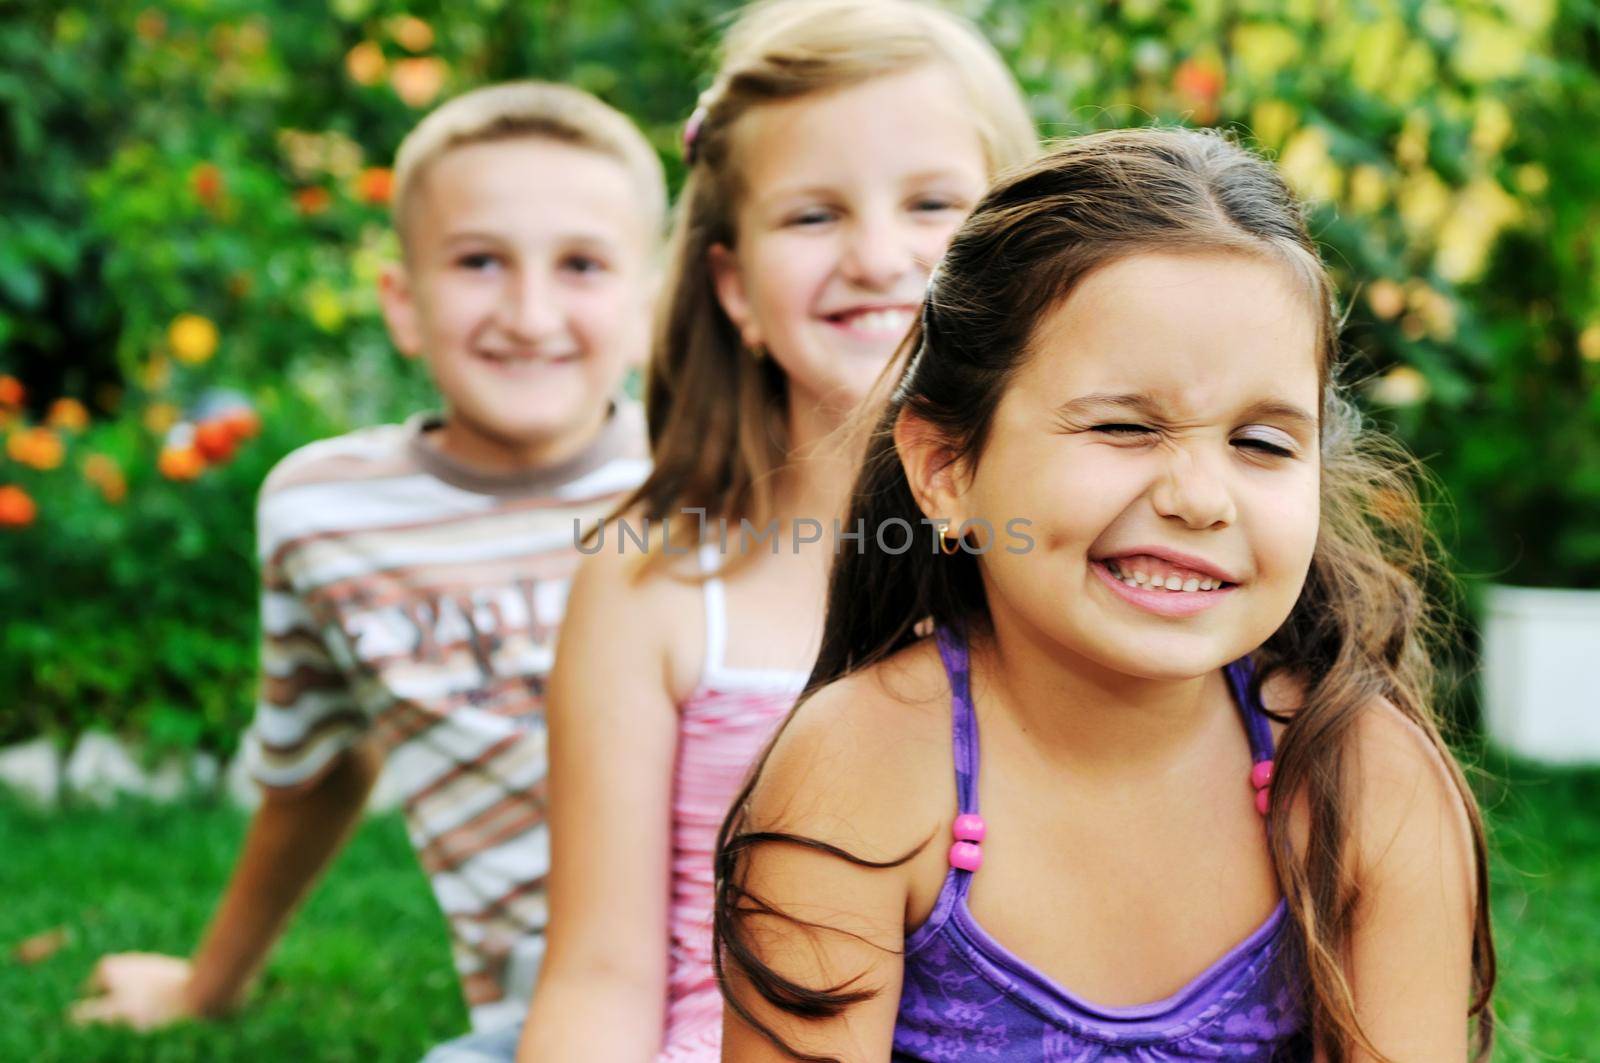 happy kids outdoor by dotshock